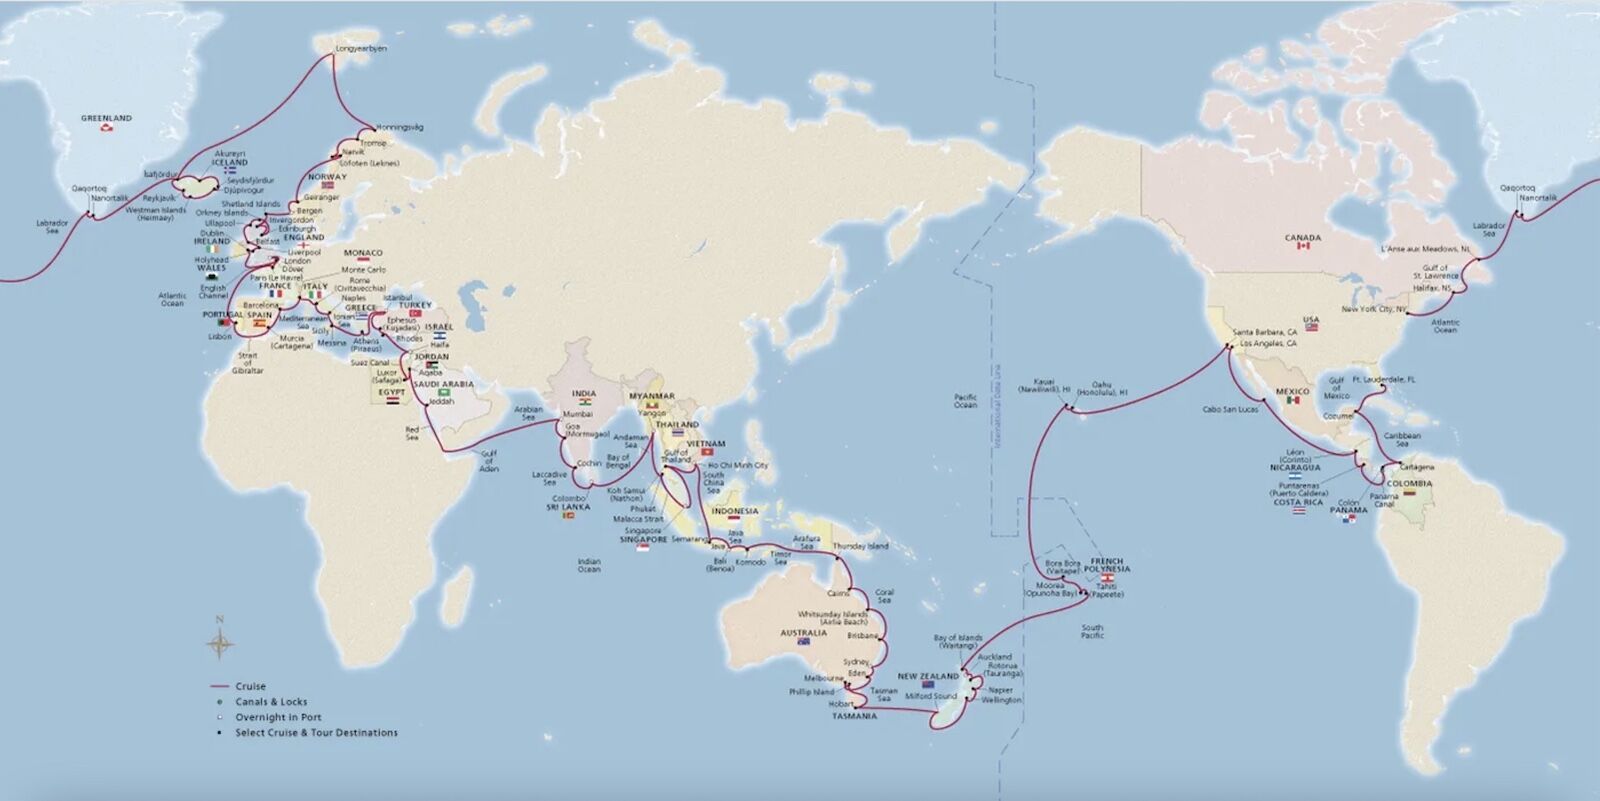 Around-the-world cruises by Viking